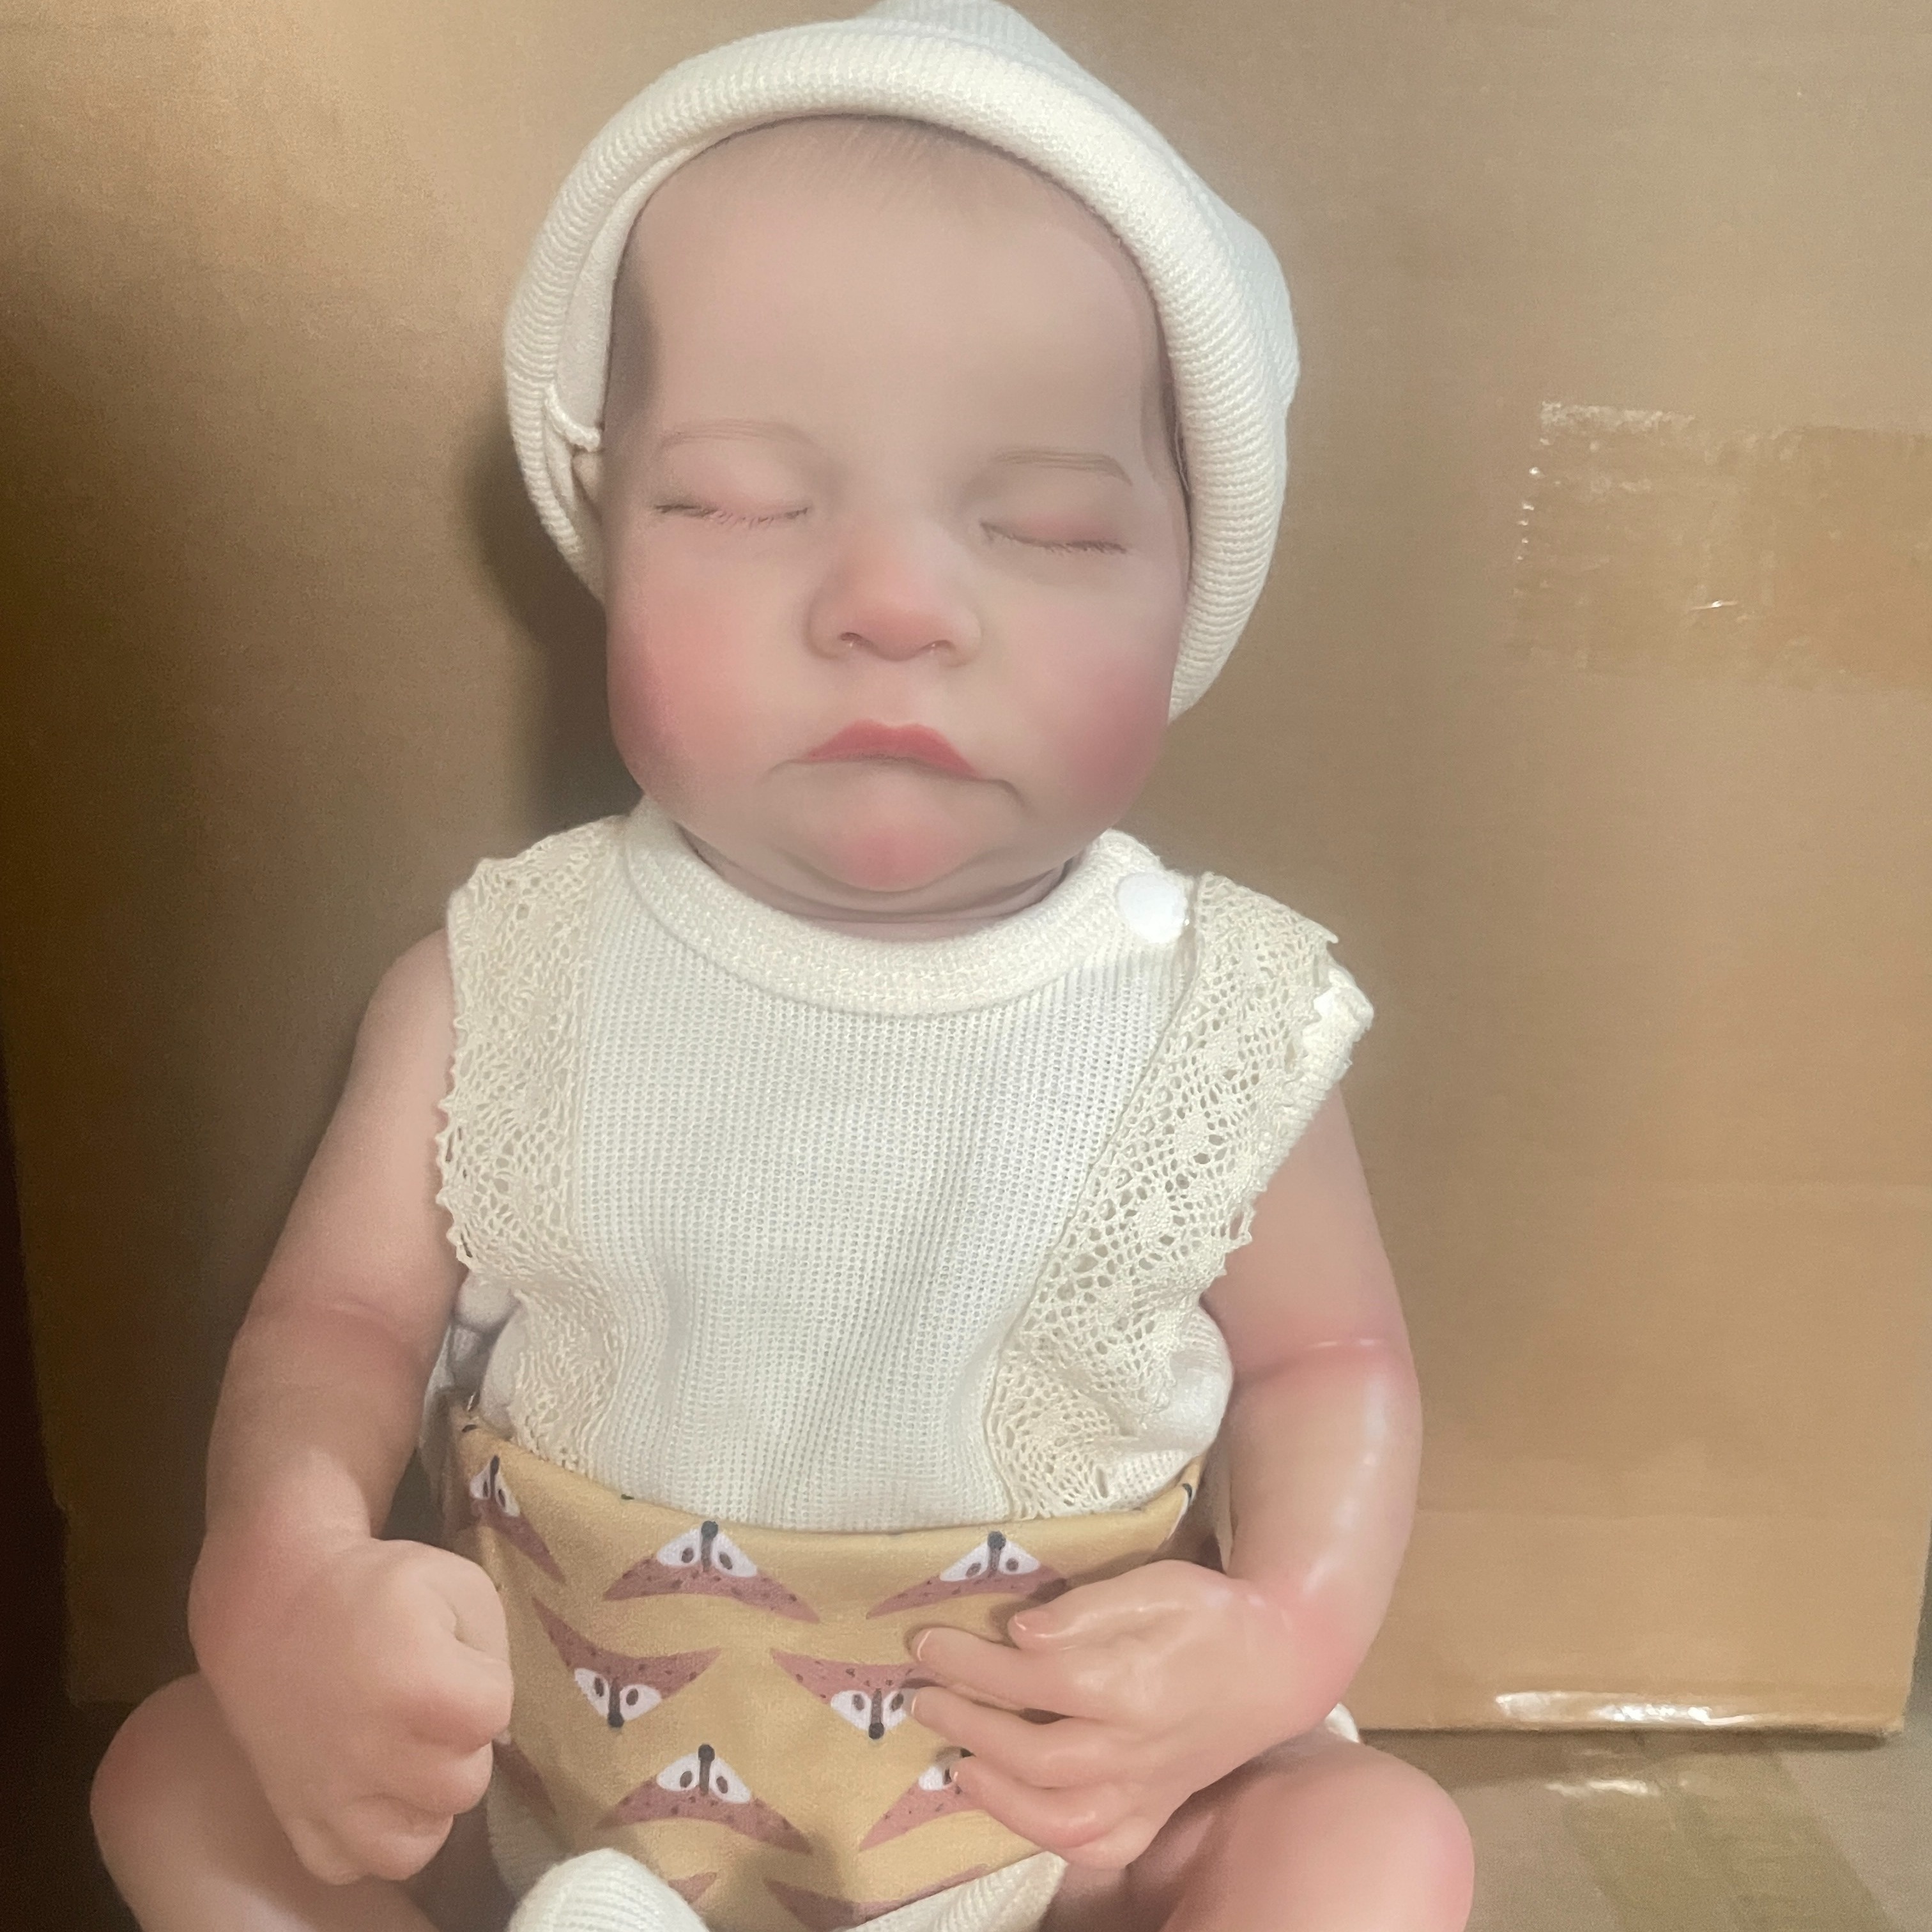 Bonecas bebê reborn realistas - Boneca bebê real de silicone recém-nascido  realista de 18 polegadas conjunto